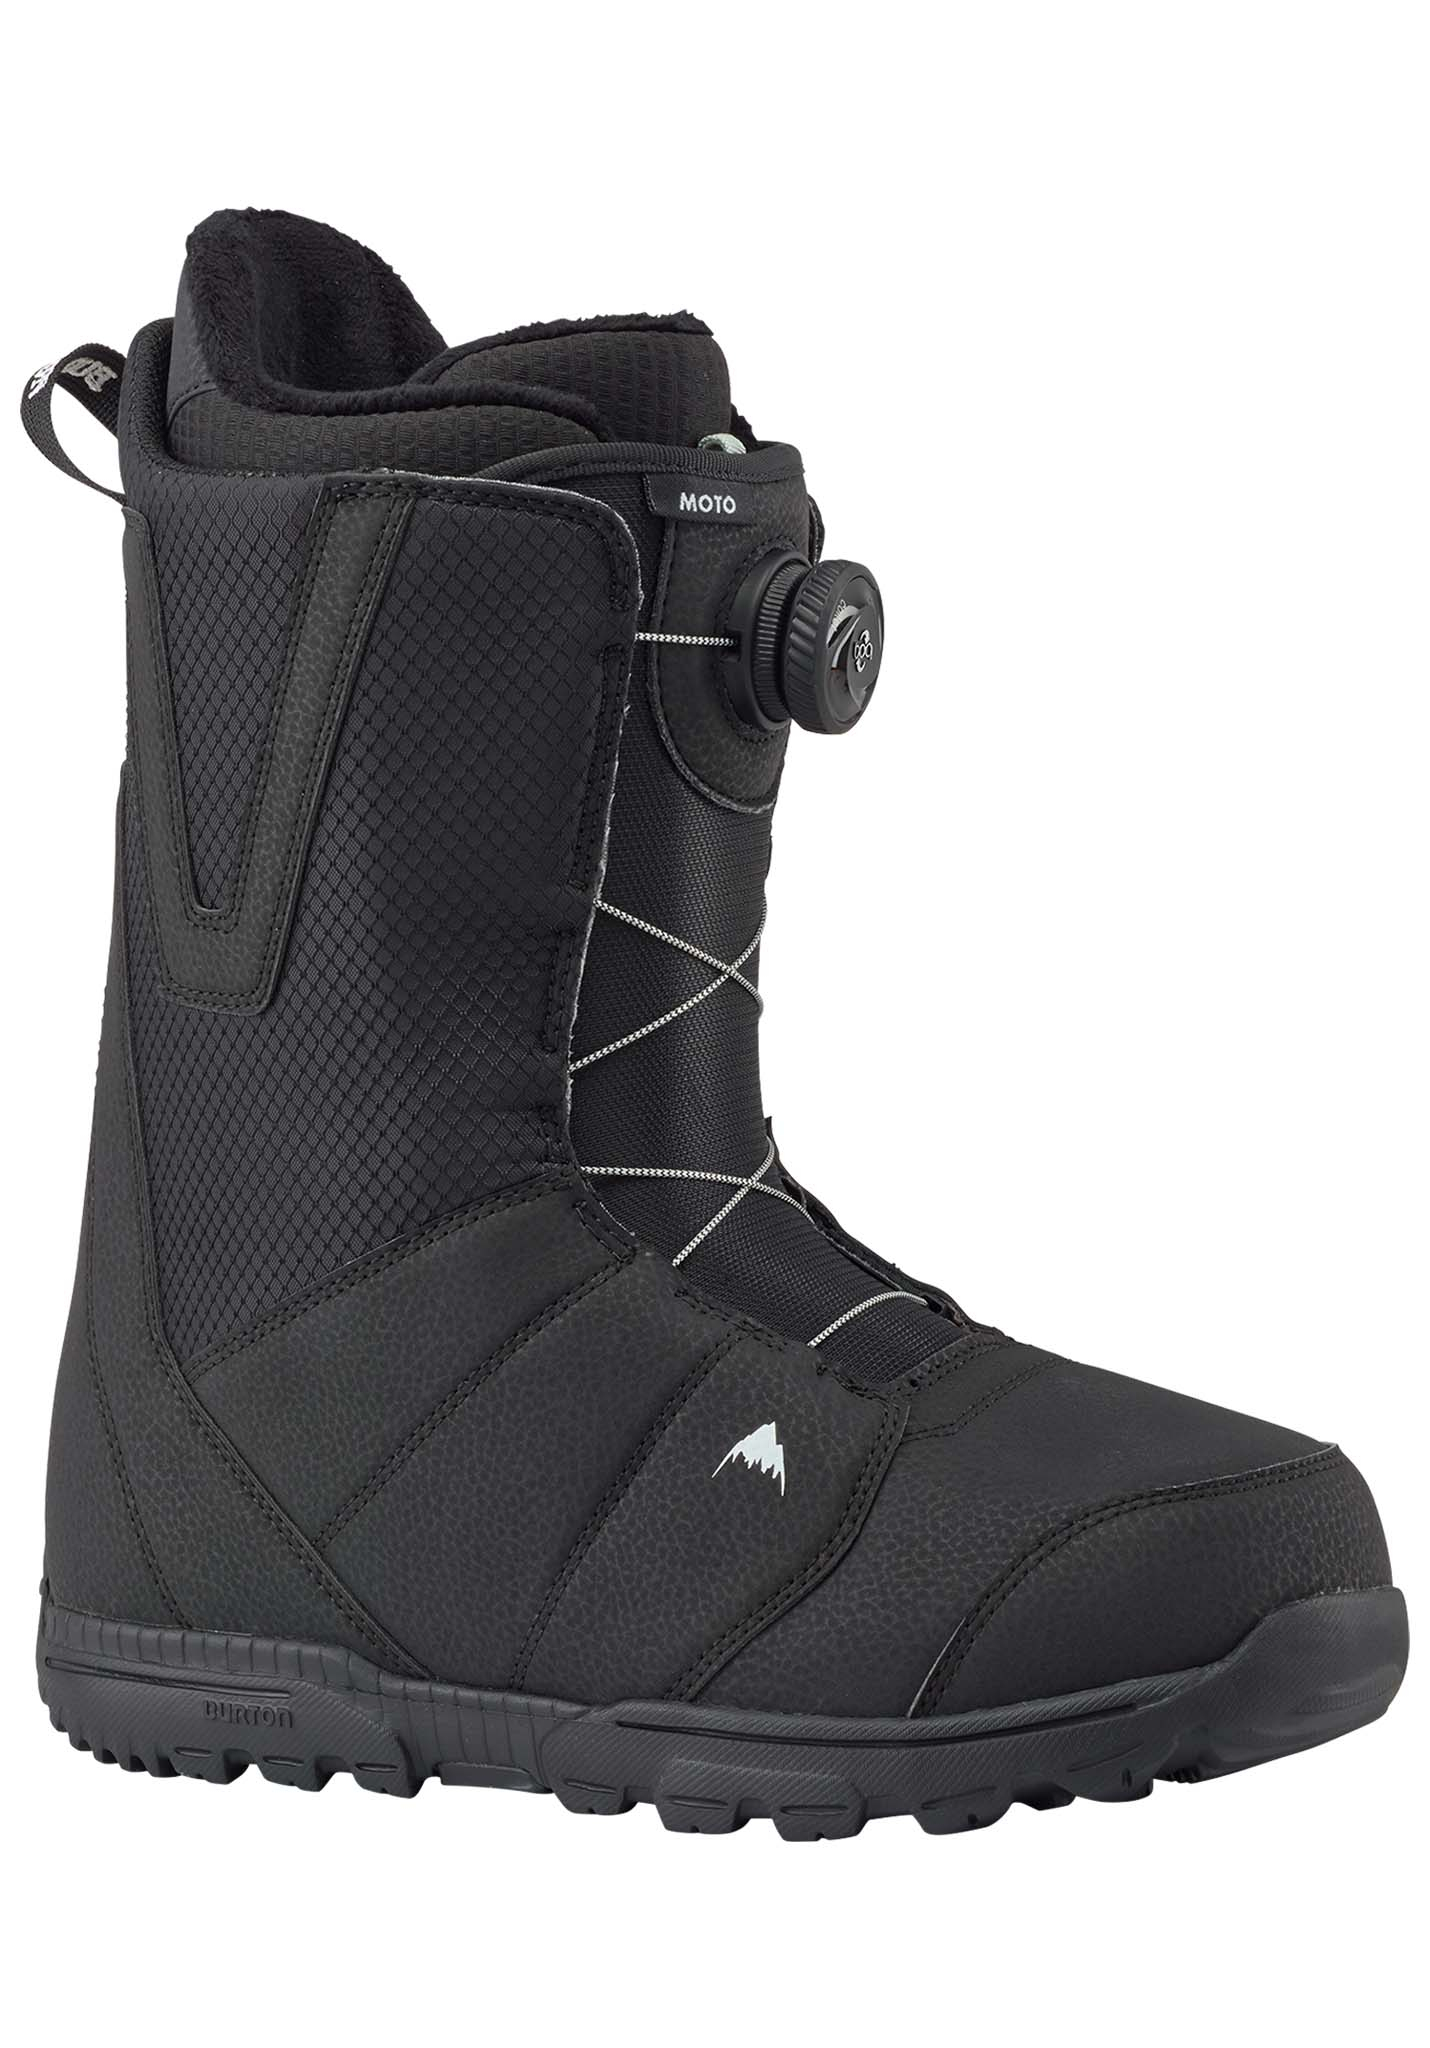 Burton Moto Boa Snowboard Boots black 48